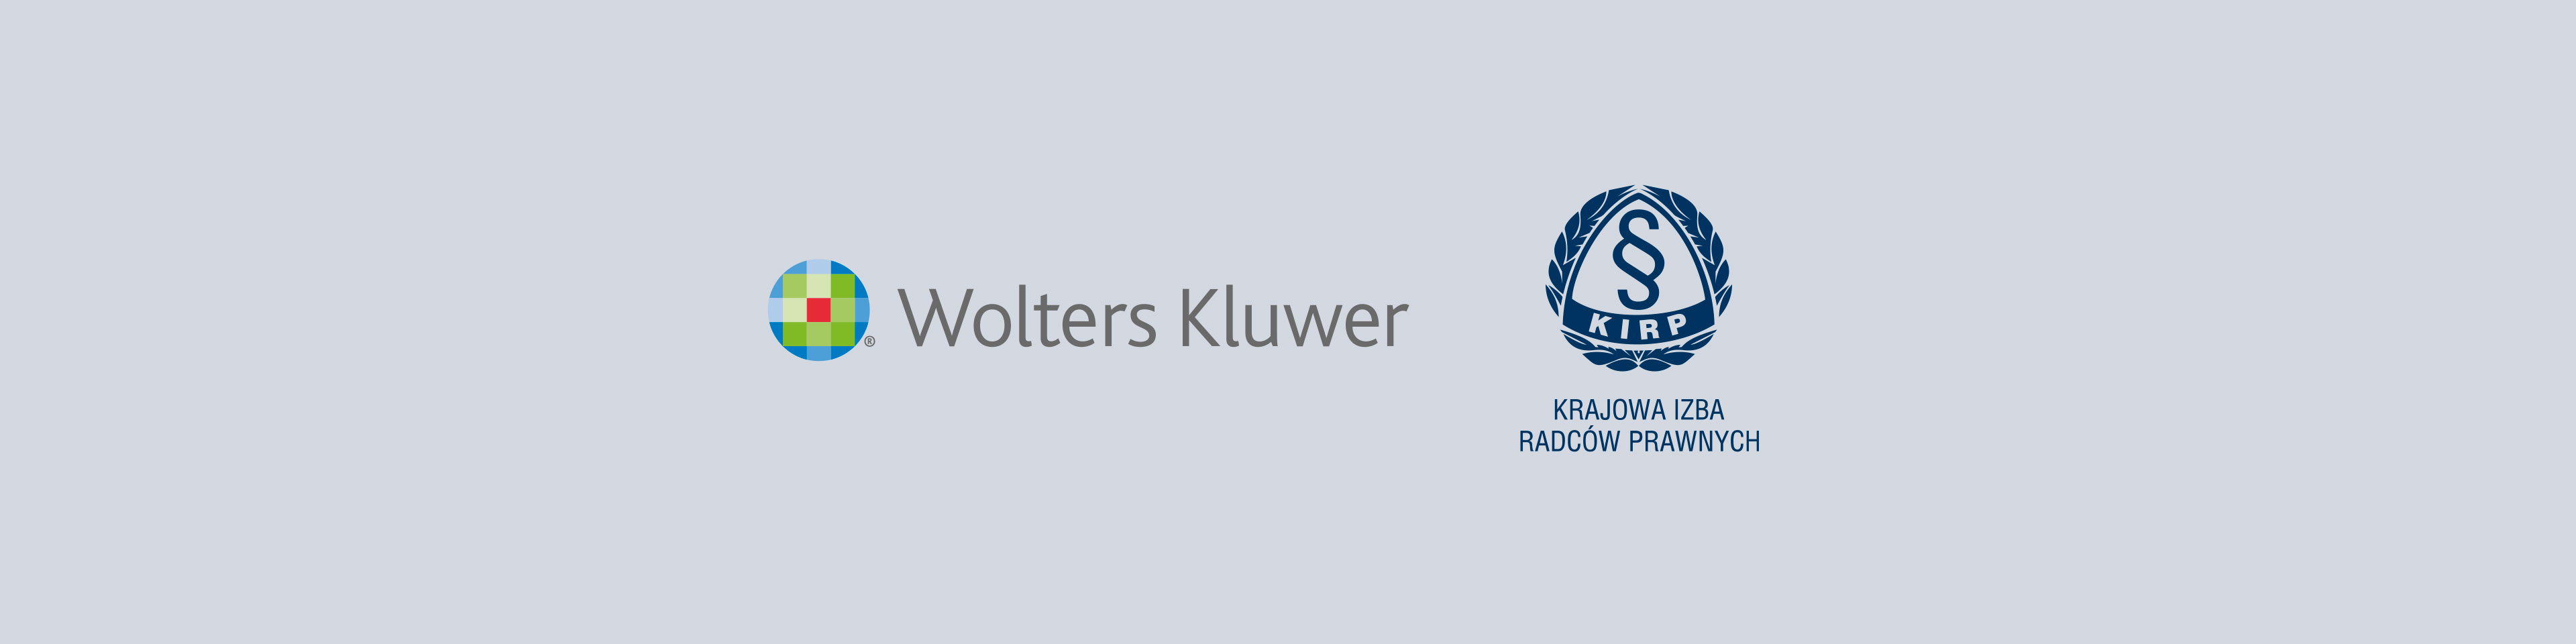 Wolters Kluwer rozwija współpracę z Krajową Izbą Radców Prawnych